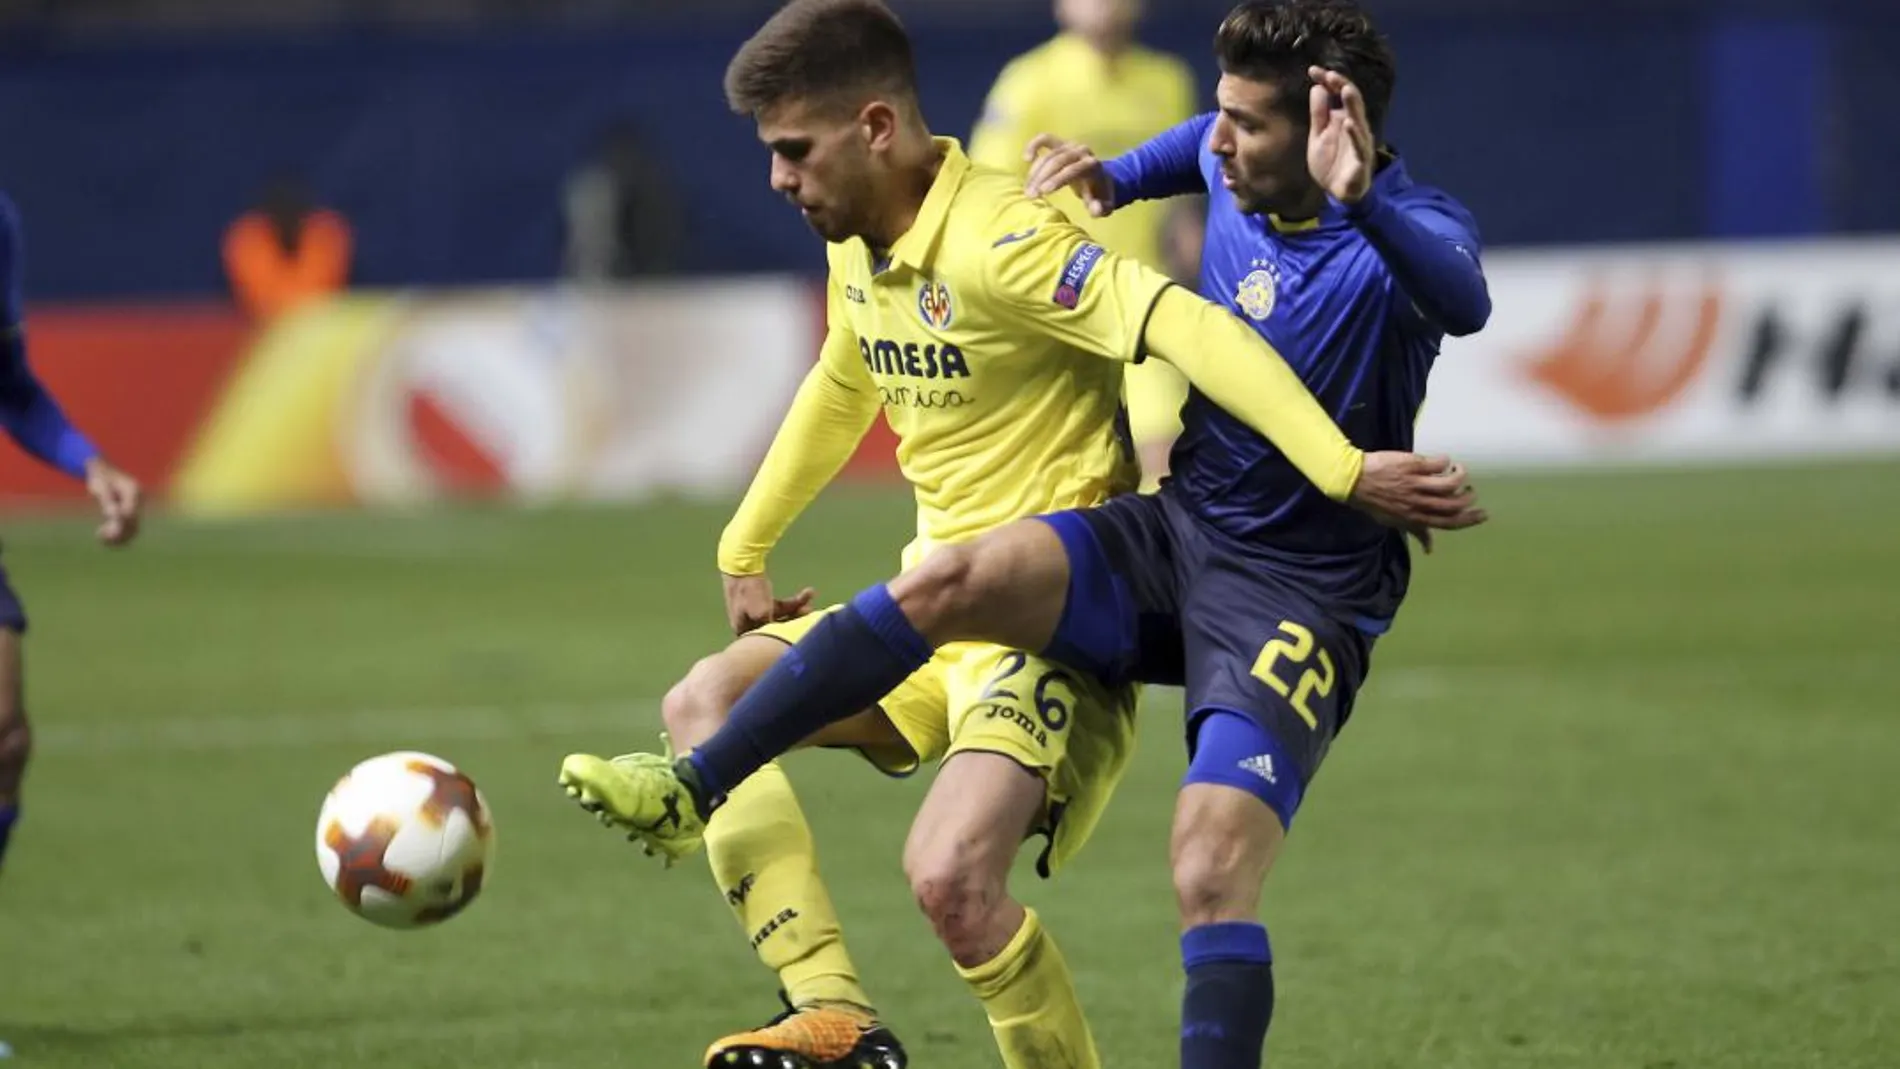 El jugador del Villarreal, Ramiro Guerra, disputa un balón con el jugador del Maccabi, Avi Rikan